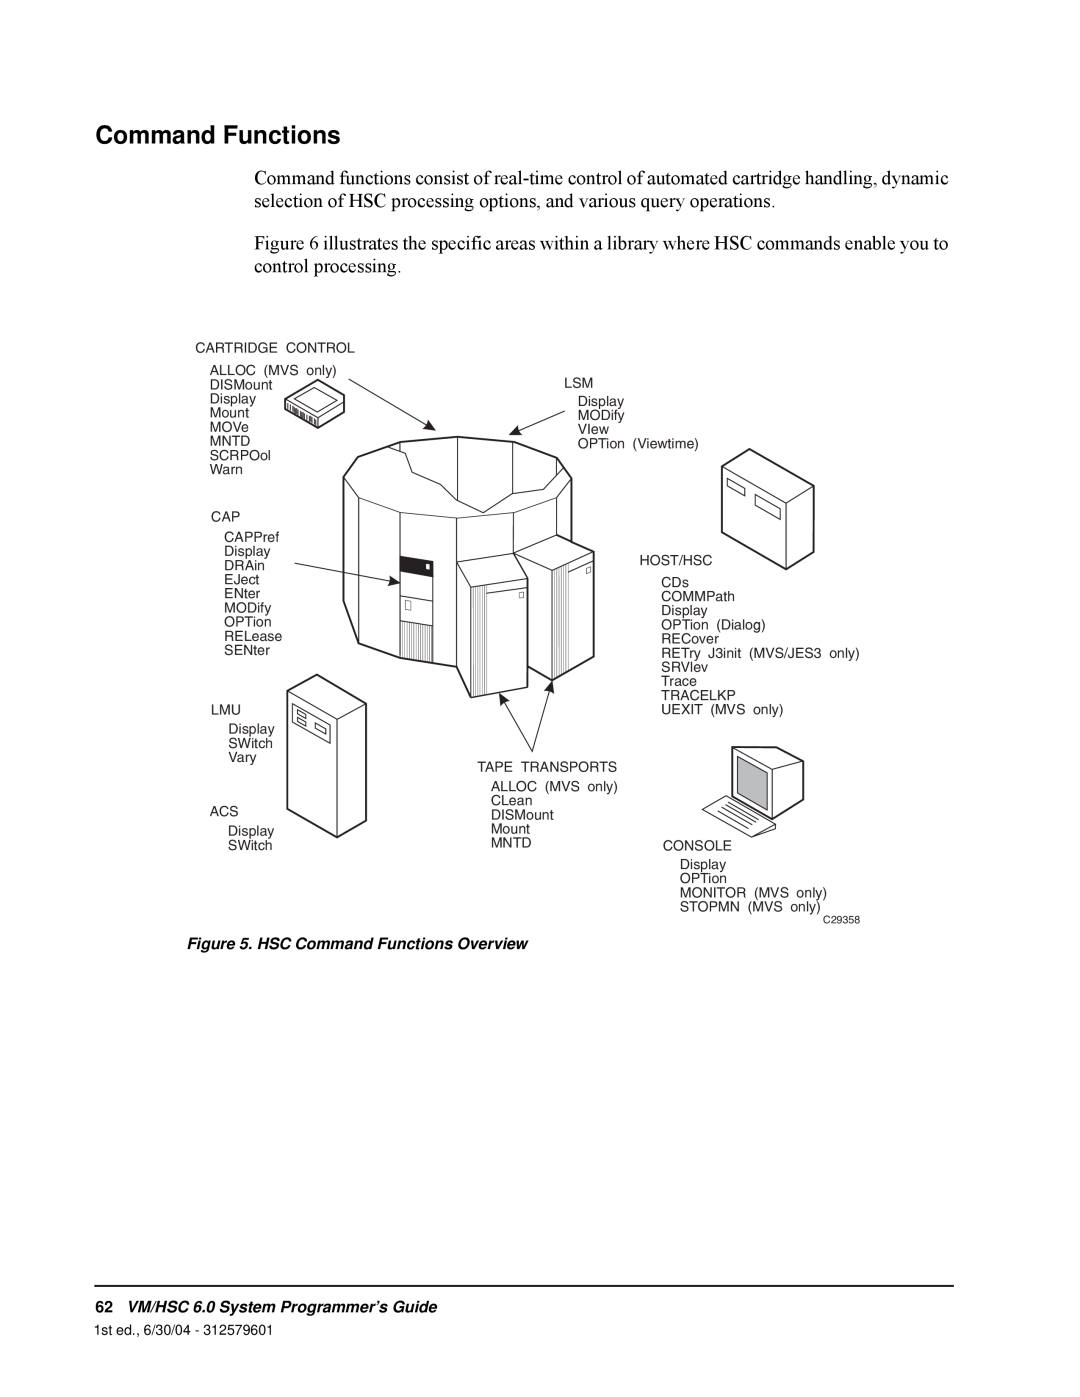 StorageTek manual HSC Command Functions Overview, 62VM/HSC 6.0 System Programmer’s Guide 